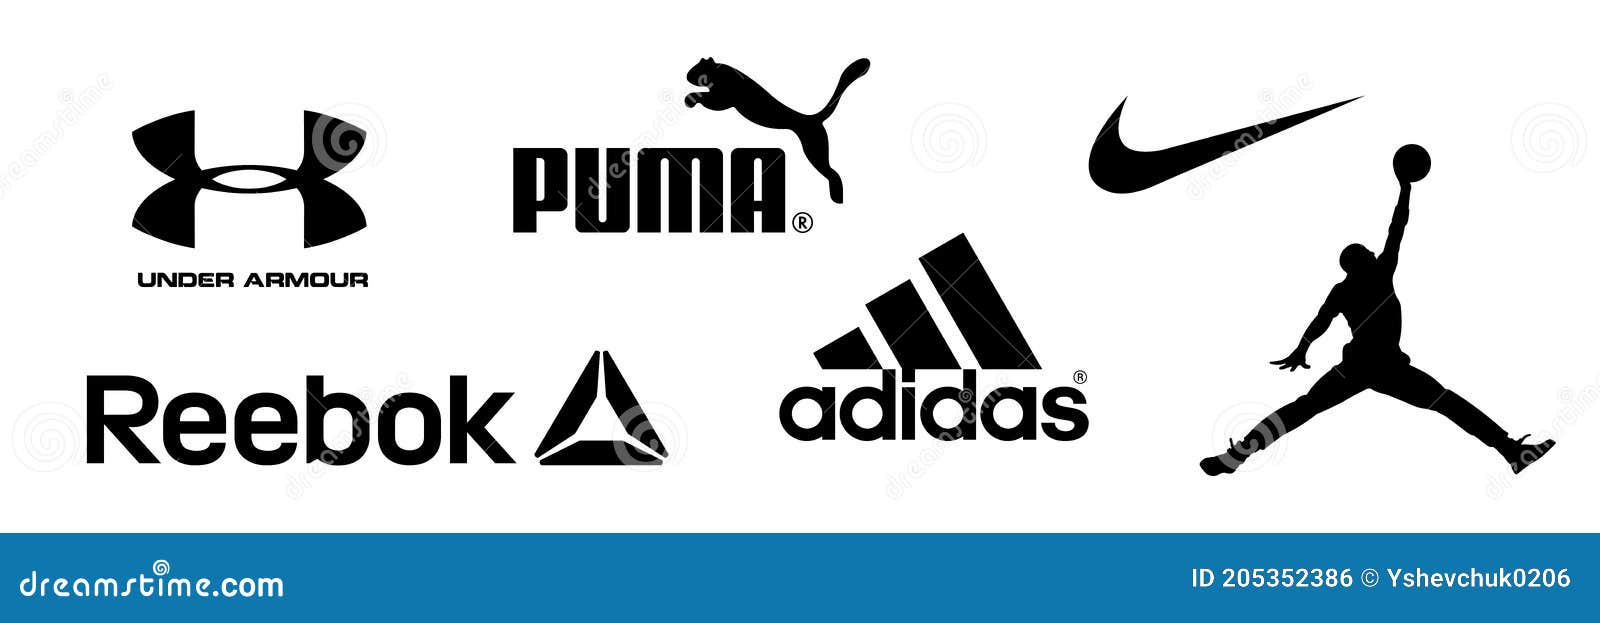 Reebok Nike Jordan Adidas Puma Bajo Logotipos De Armadura De Equipo Deportivo Y Compañía De Ropa Deportiva. Kyiv Ucrania Diciembre Foto editorial Ilustración de objeto, muestra: 205352386